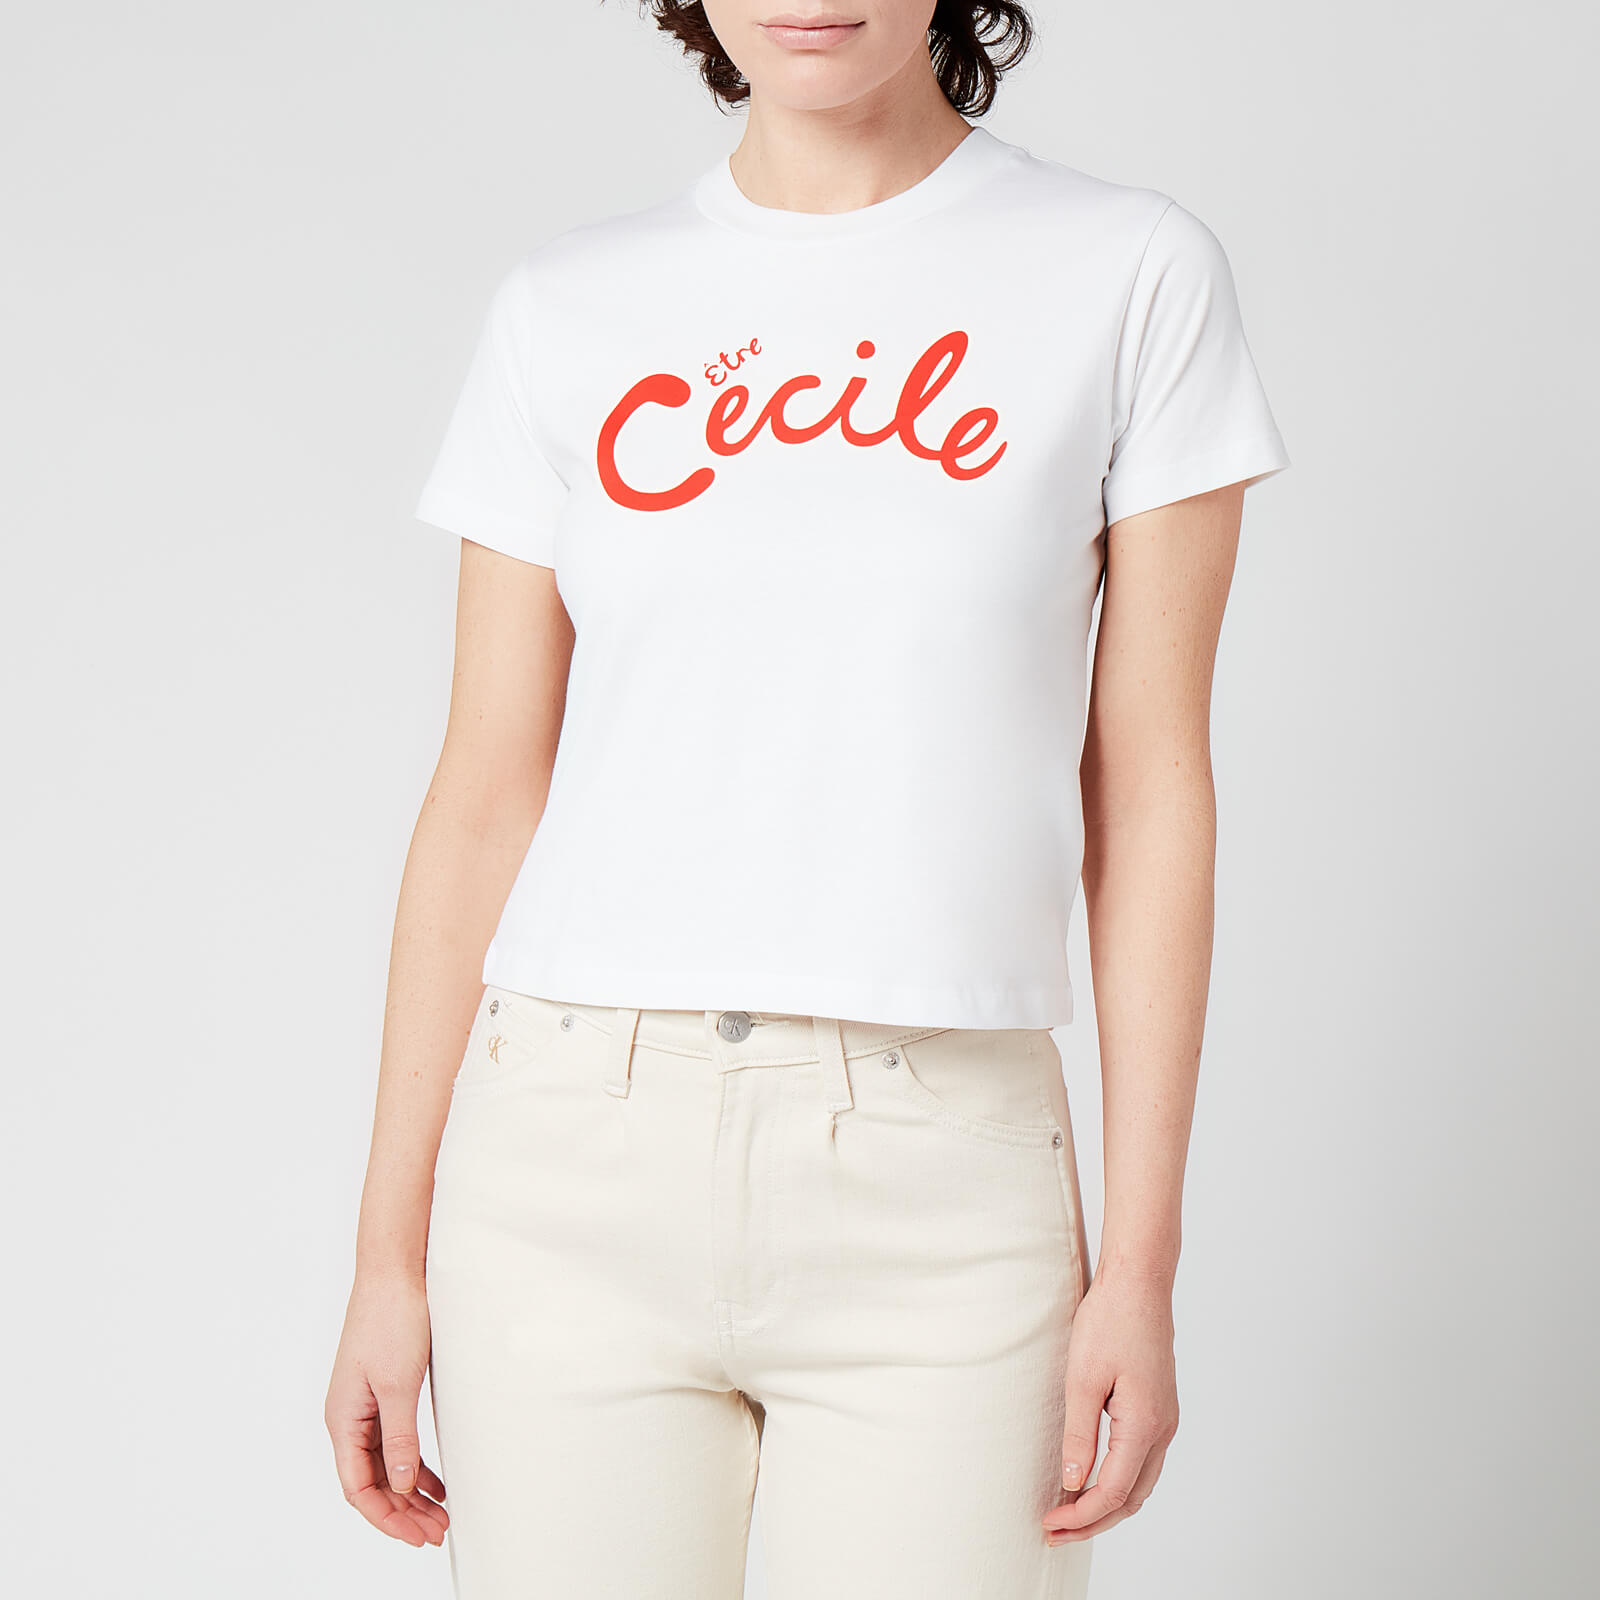 Etre Cecile Women's Ec T-Shirt - White